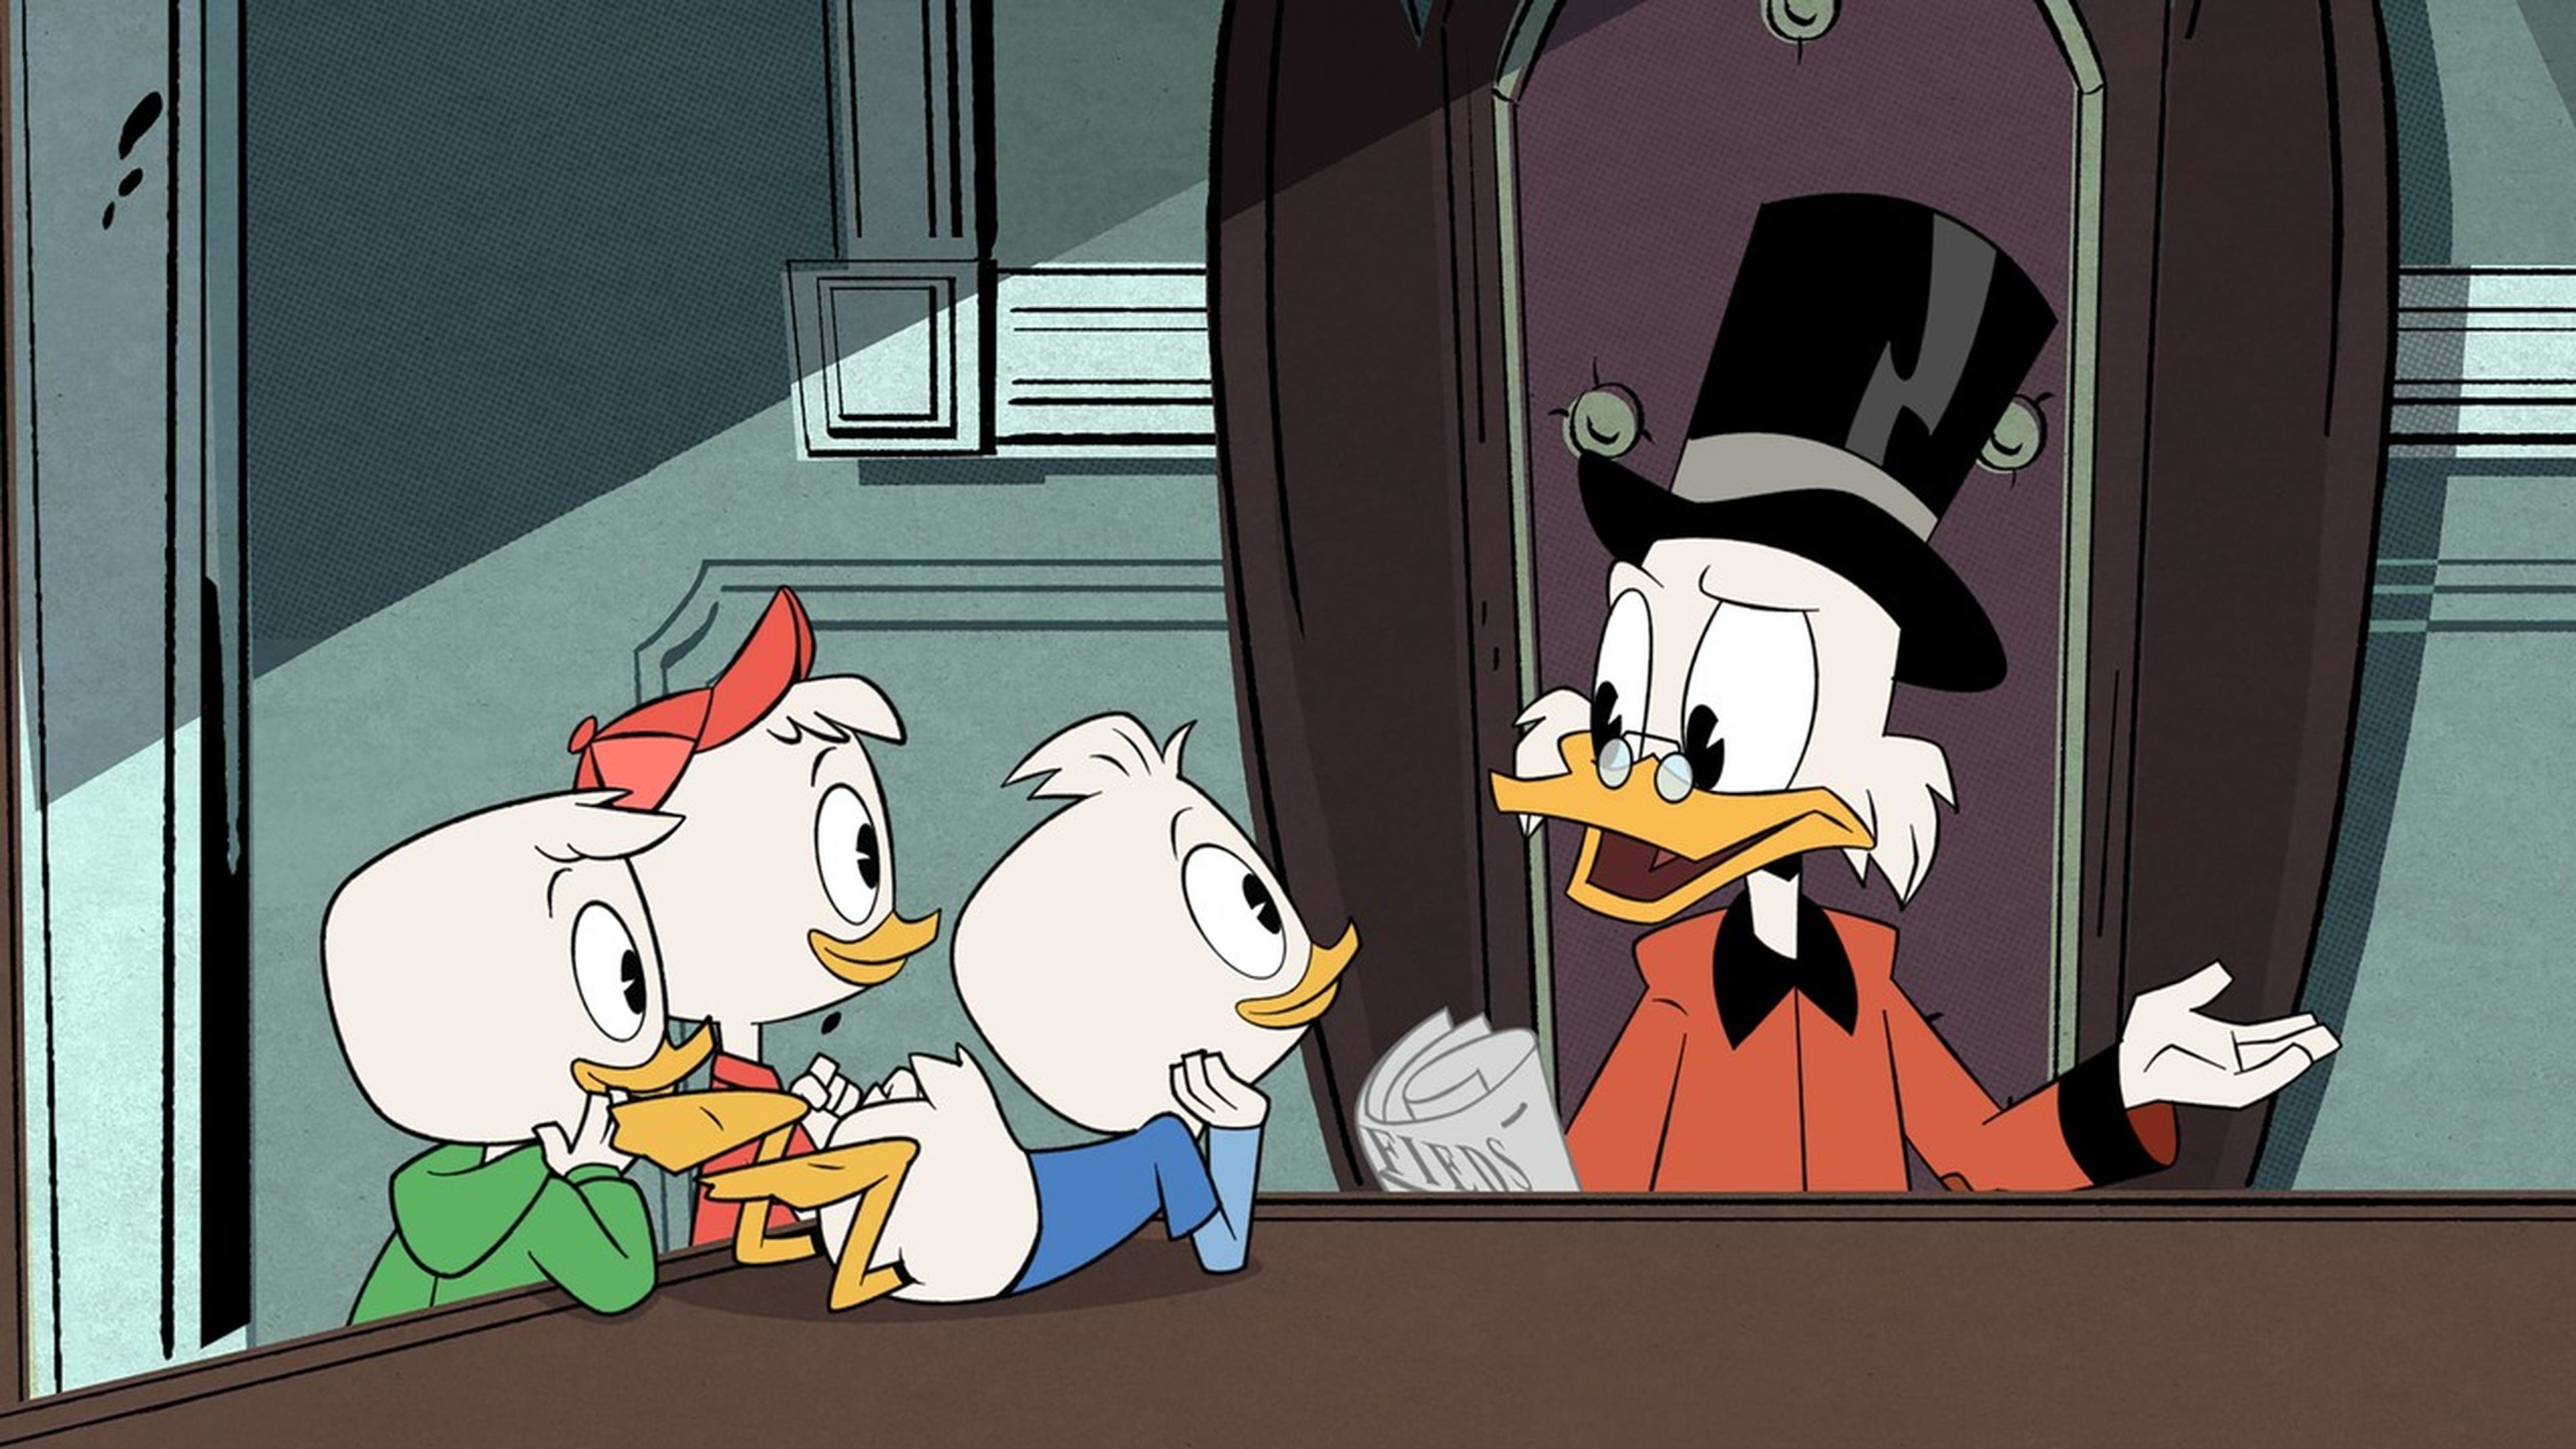 ¡Patoaventuras vuelve! - Primeras impresiones de Ducktales 2017